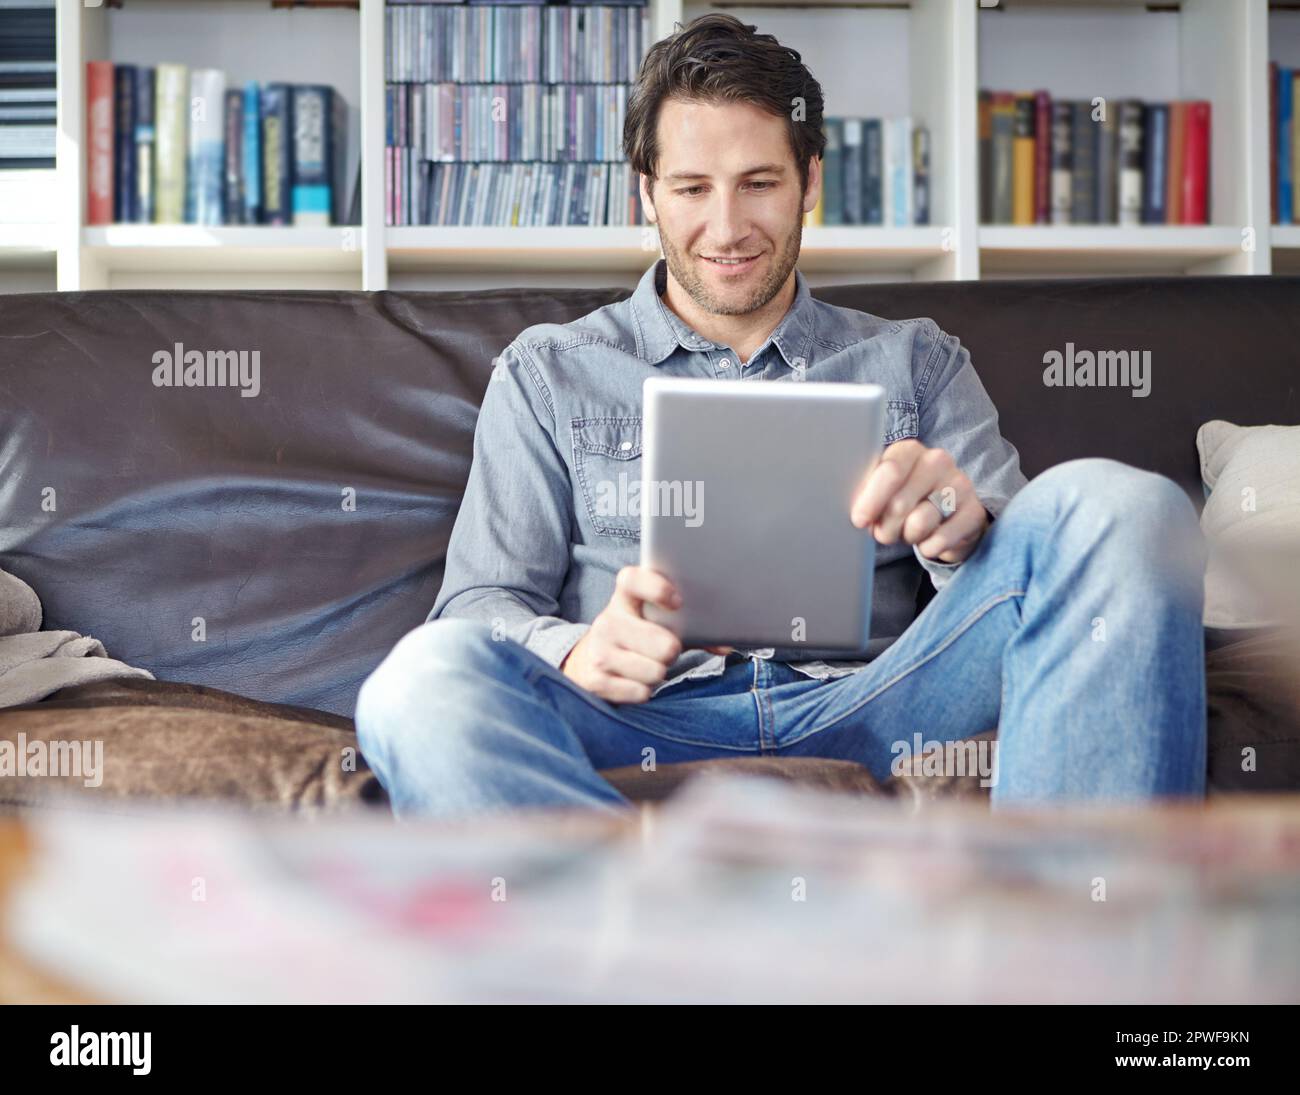 Er hat sich am Wochenende unterhalten. Ein gutaussehender junger Mann, der auf einer Couch sitzt, während er ein digitales Tablet benutzt. Stockfoto